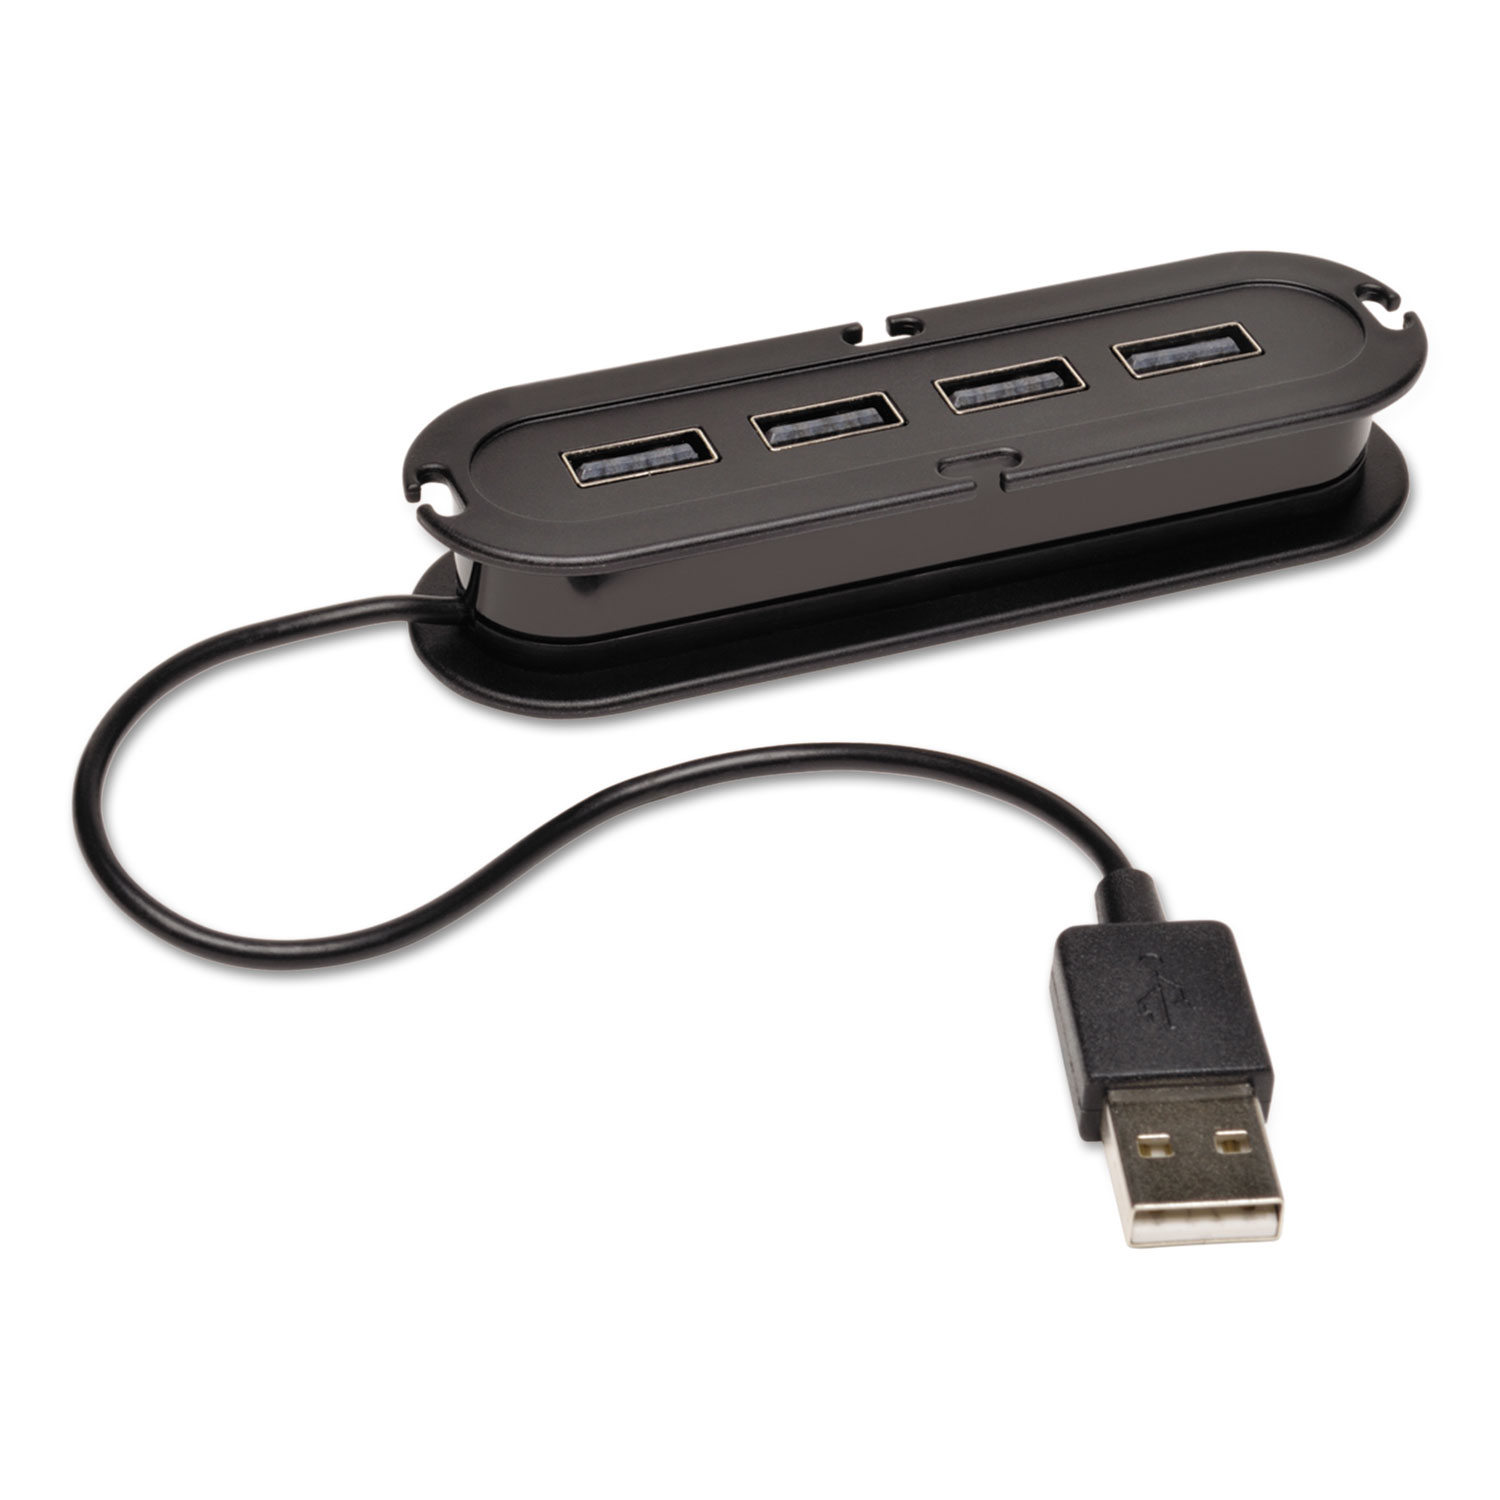  Tripp Lite U222-004-R USB 2.0 Ultra-Mini Compact Hub with Power Adapter, 4 Ports, Black (TRPU222004R) 